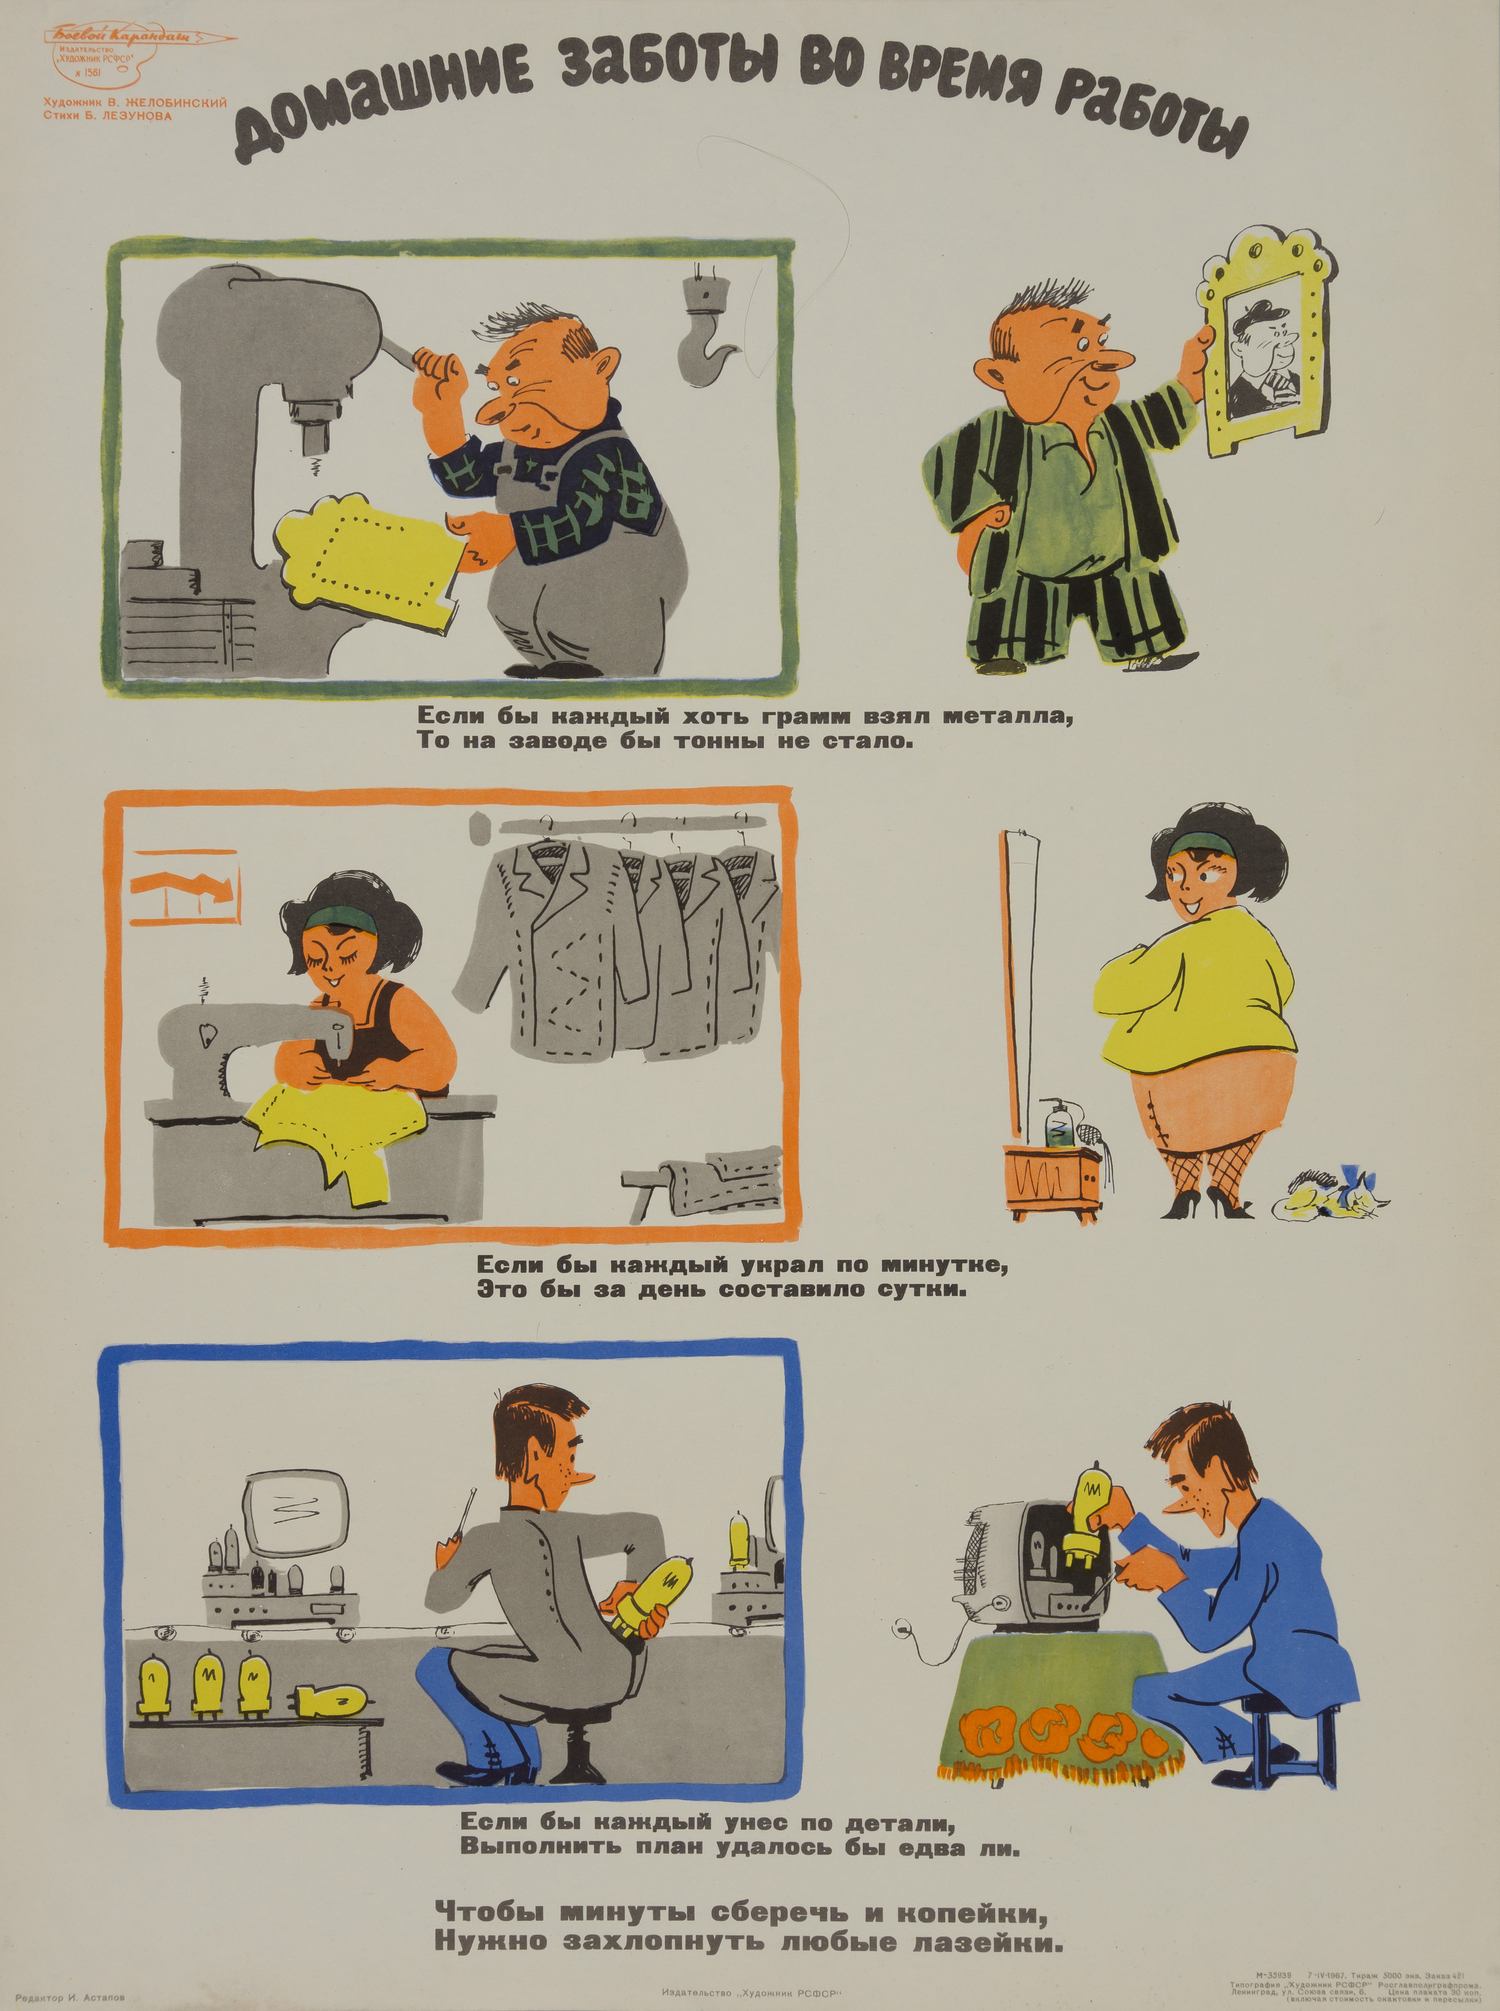 («Боевой карандаш») Желобинский В.В. Плакат «Домашние заботы во время работы» (Л., 1967).